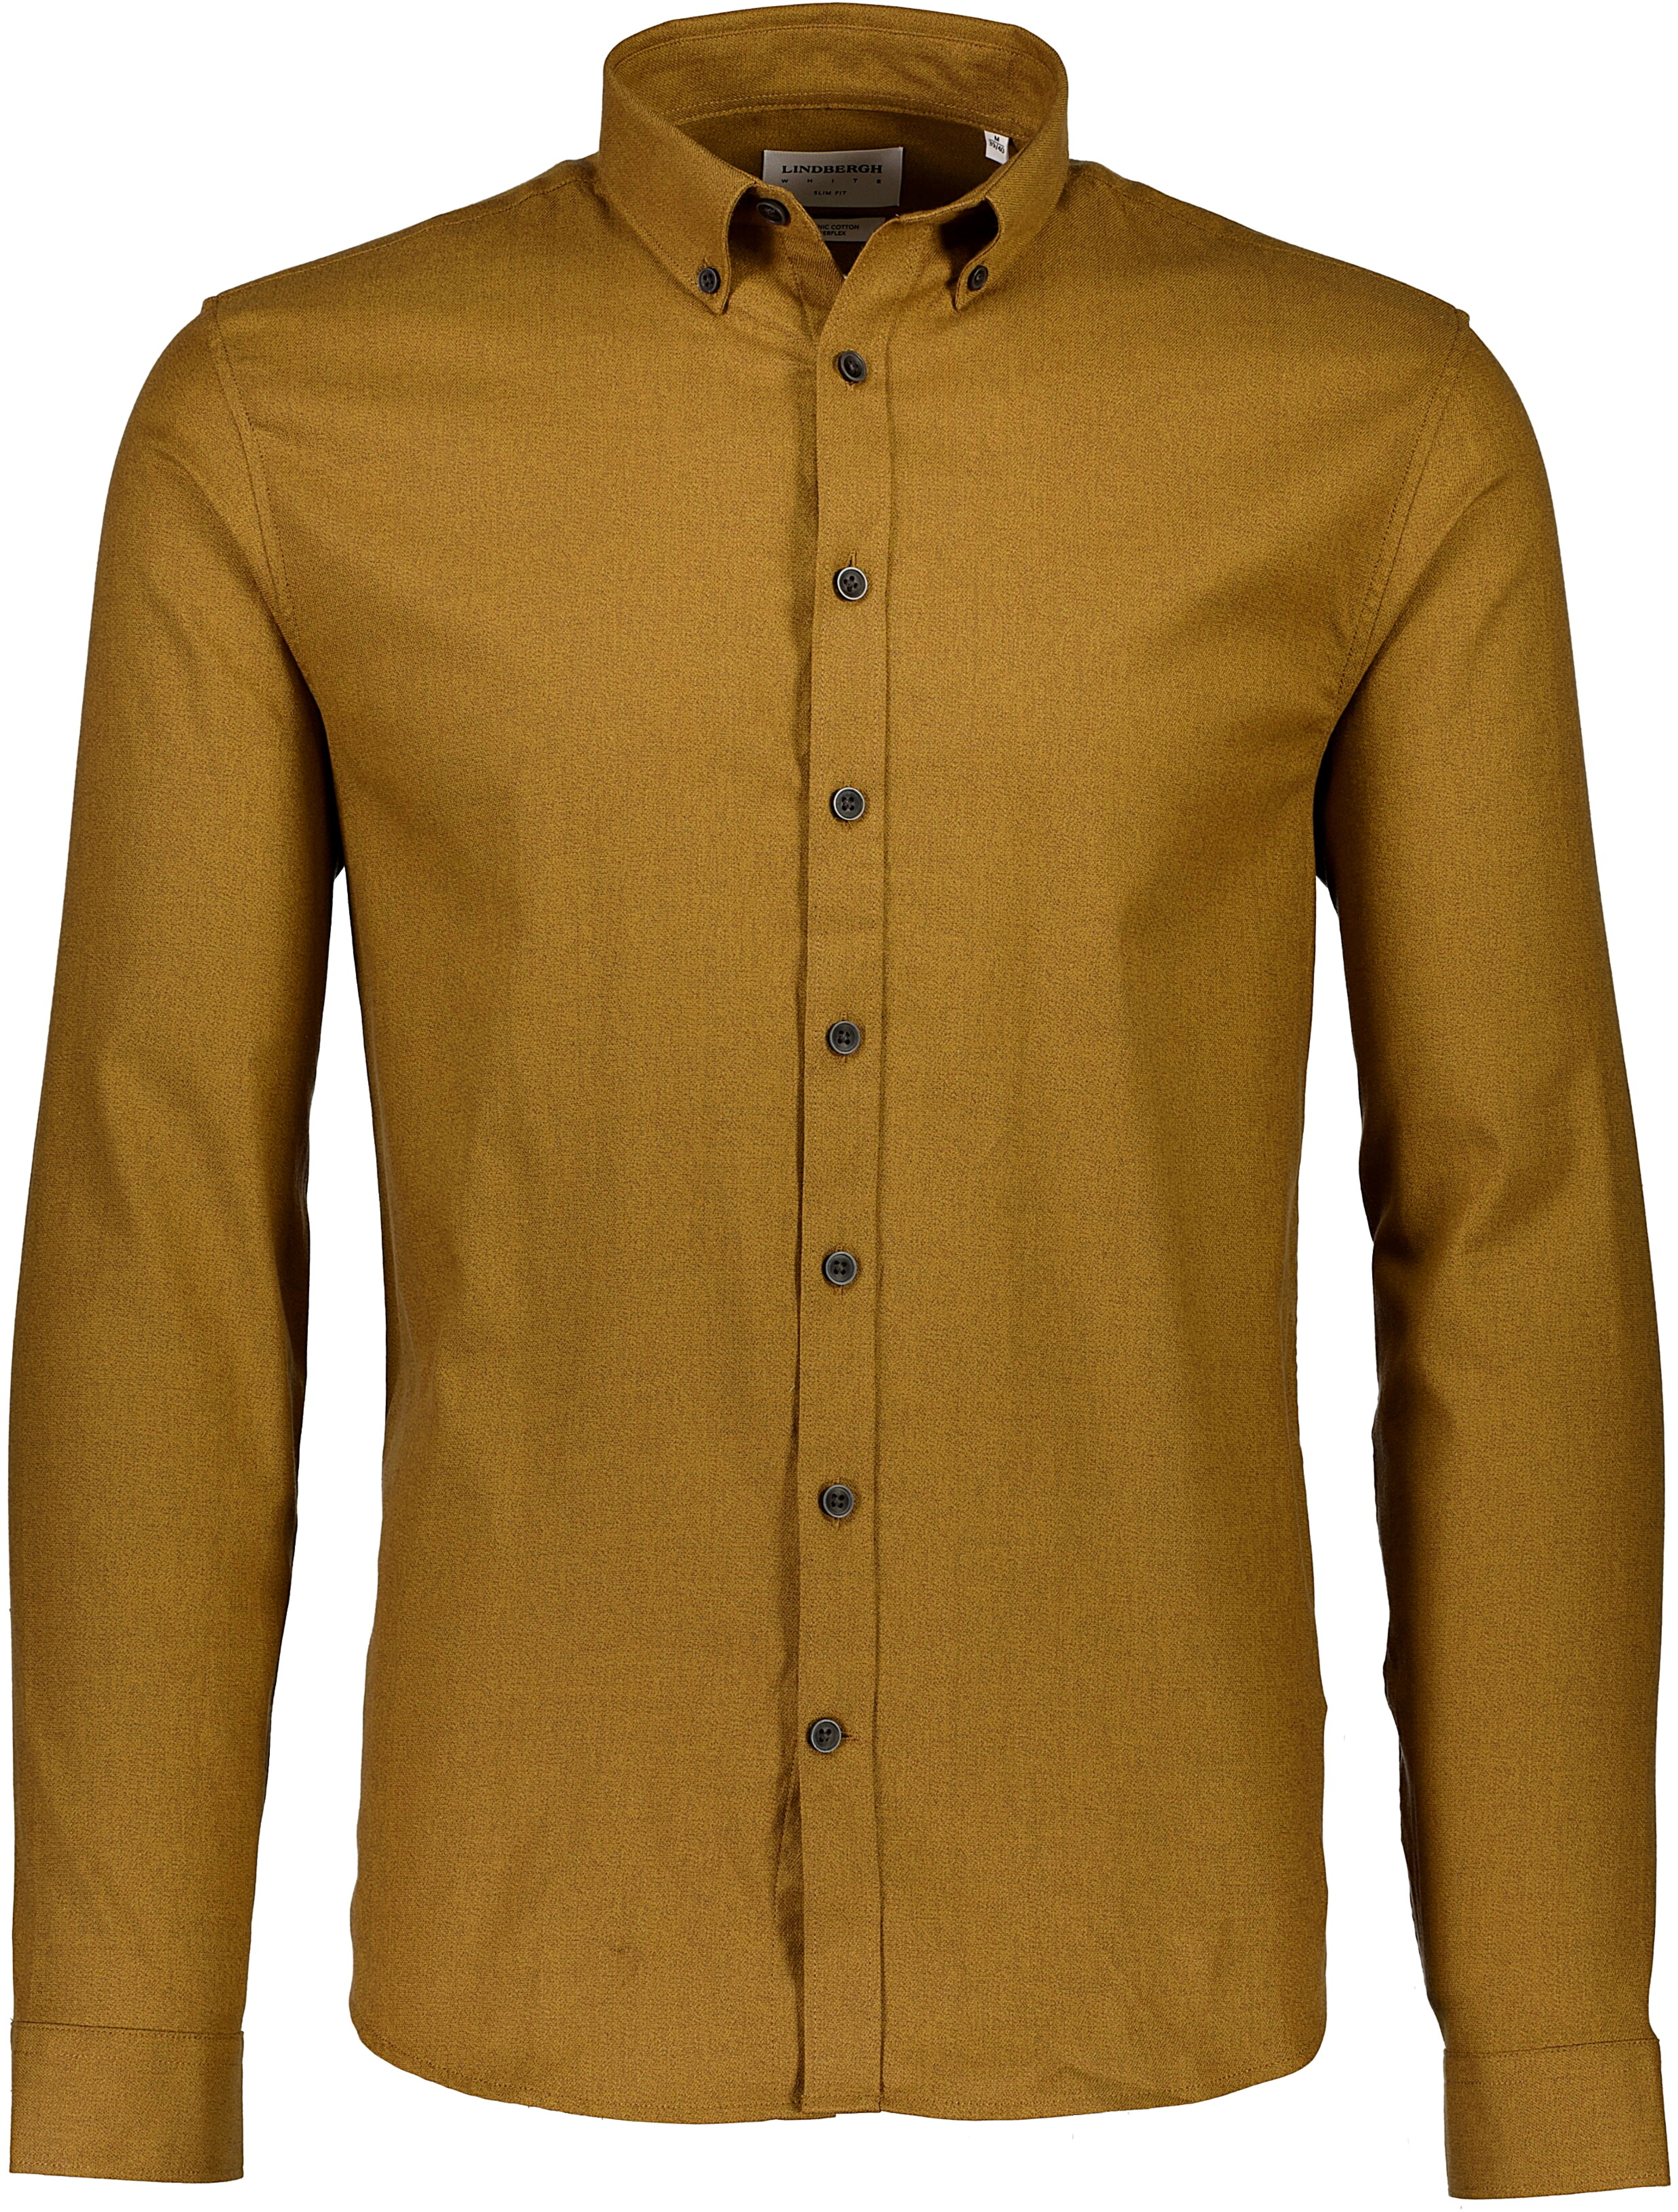 Lindbergh Business skjorte brun / mid brown